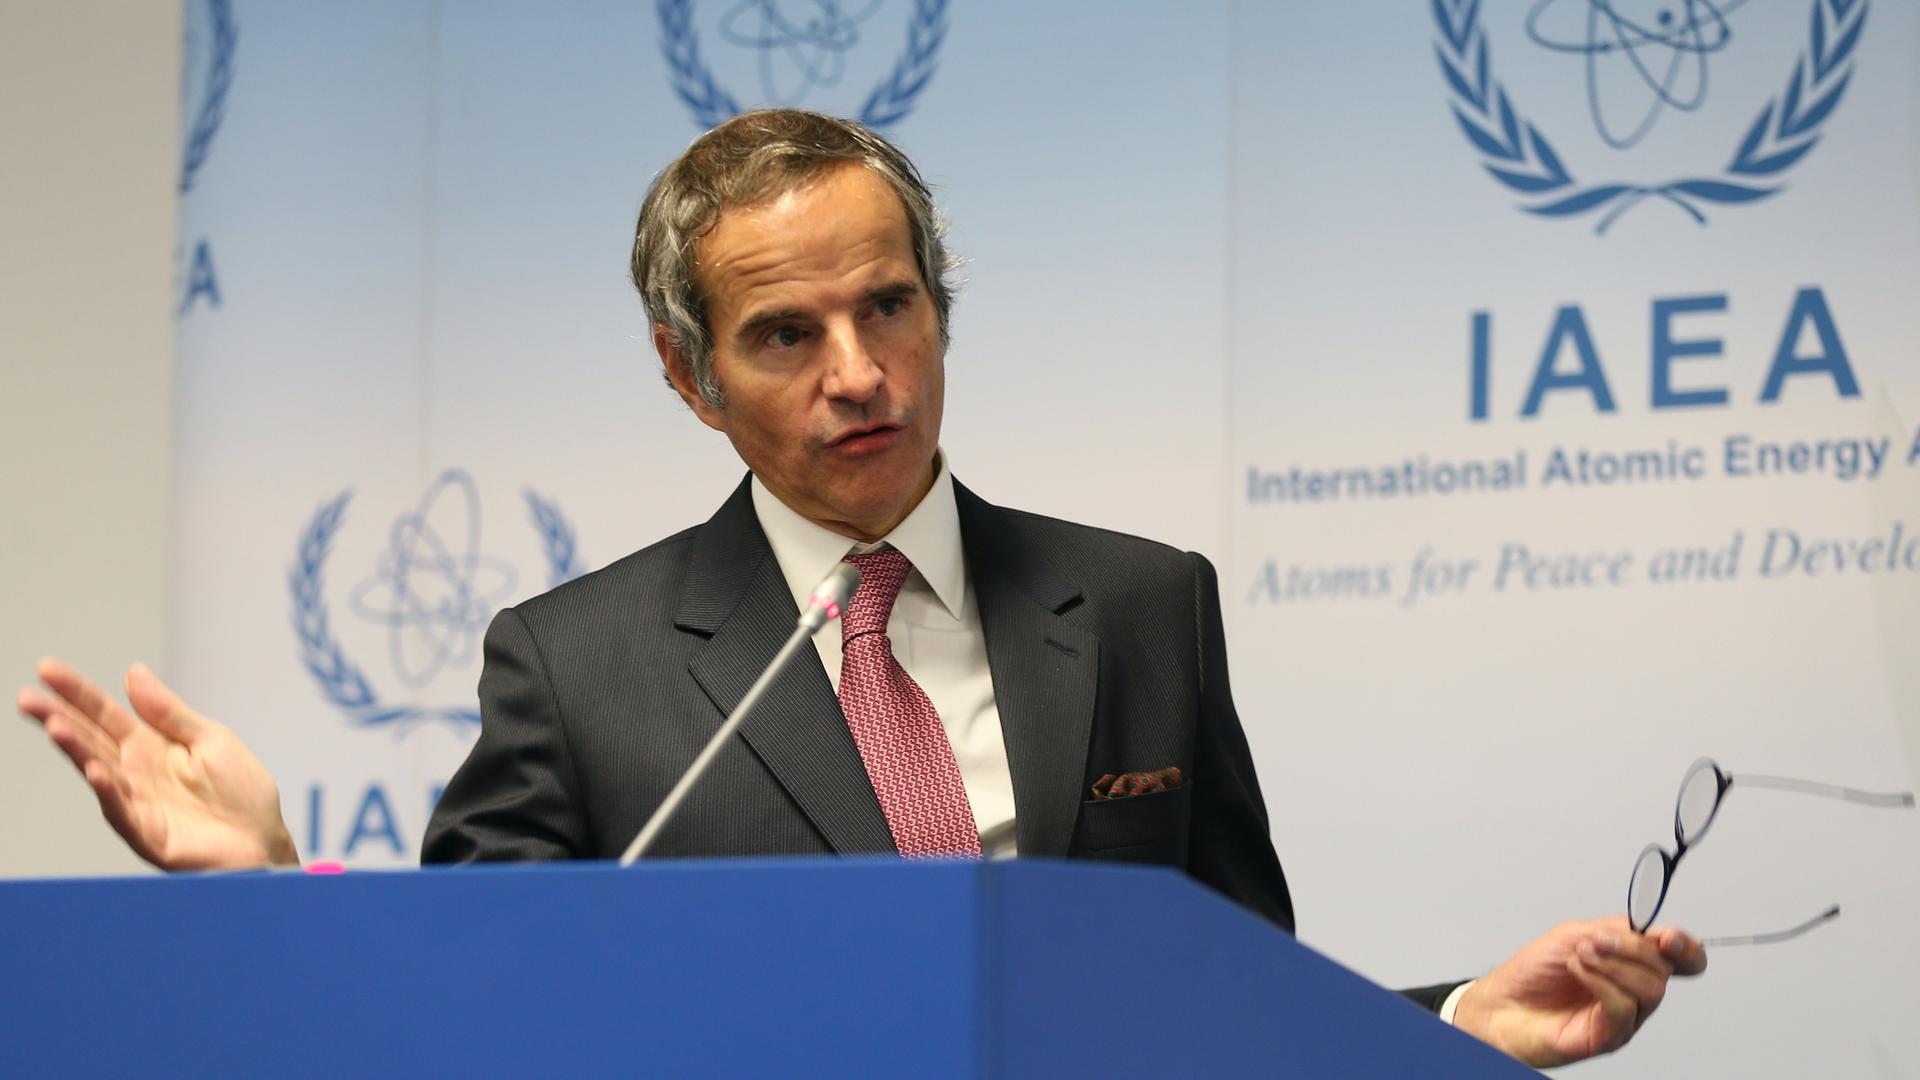 Österreich, Wien: Rafael Mariano Grossi, IAEA-Chef, spricht auf einer Konferenz.